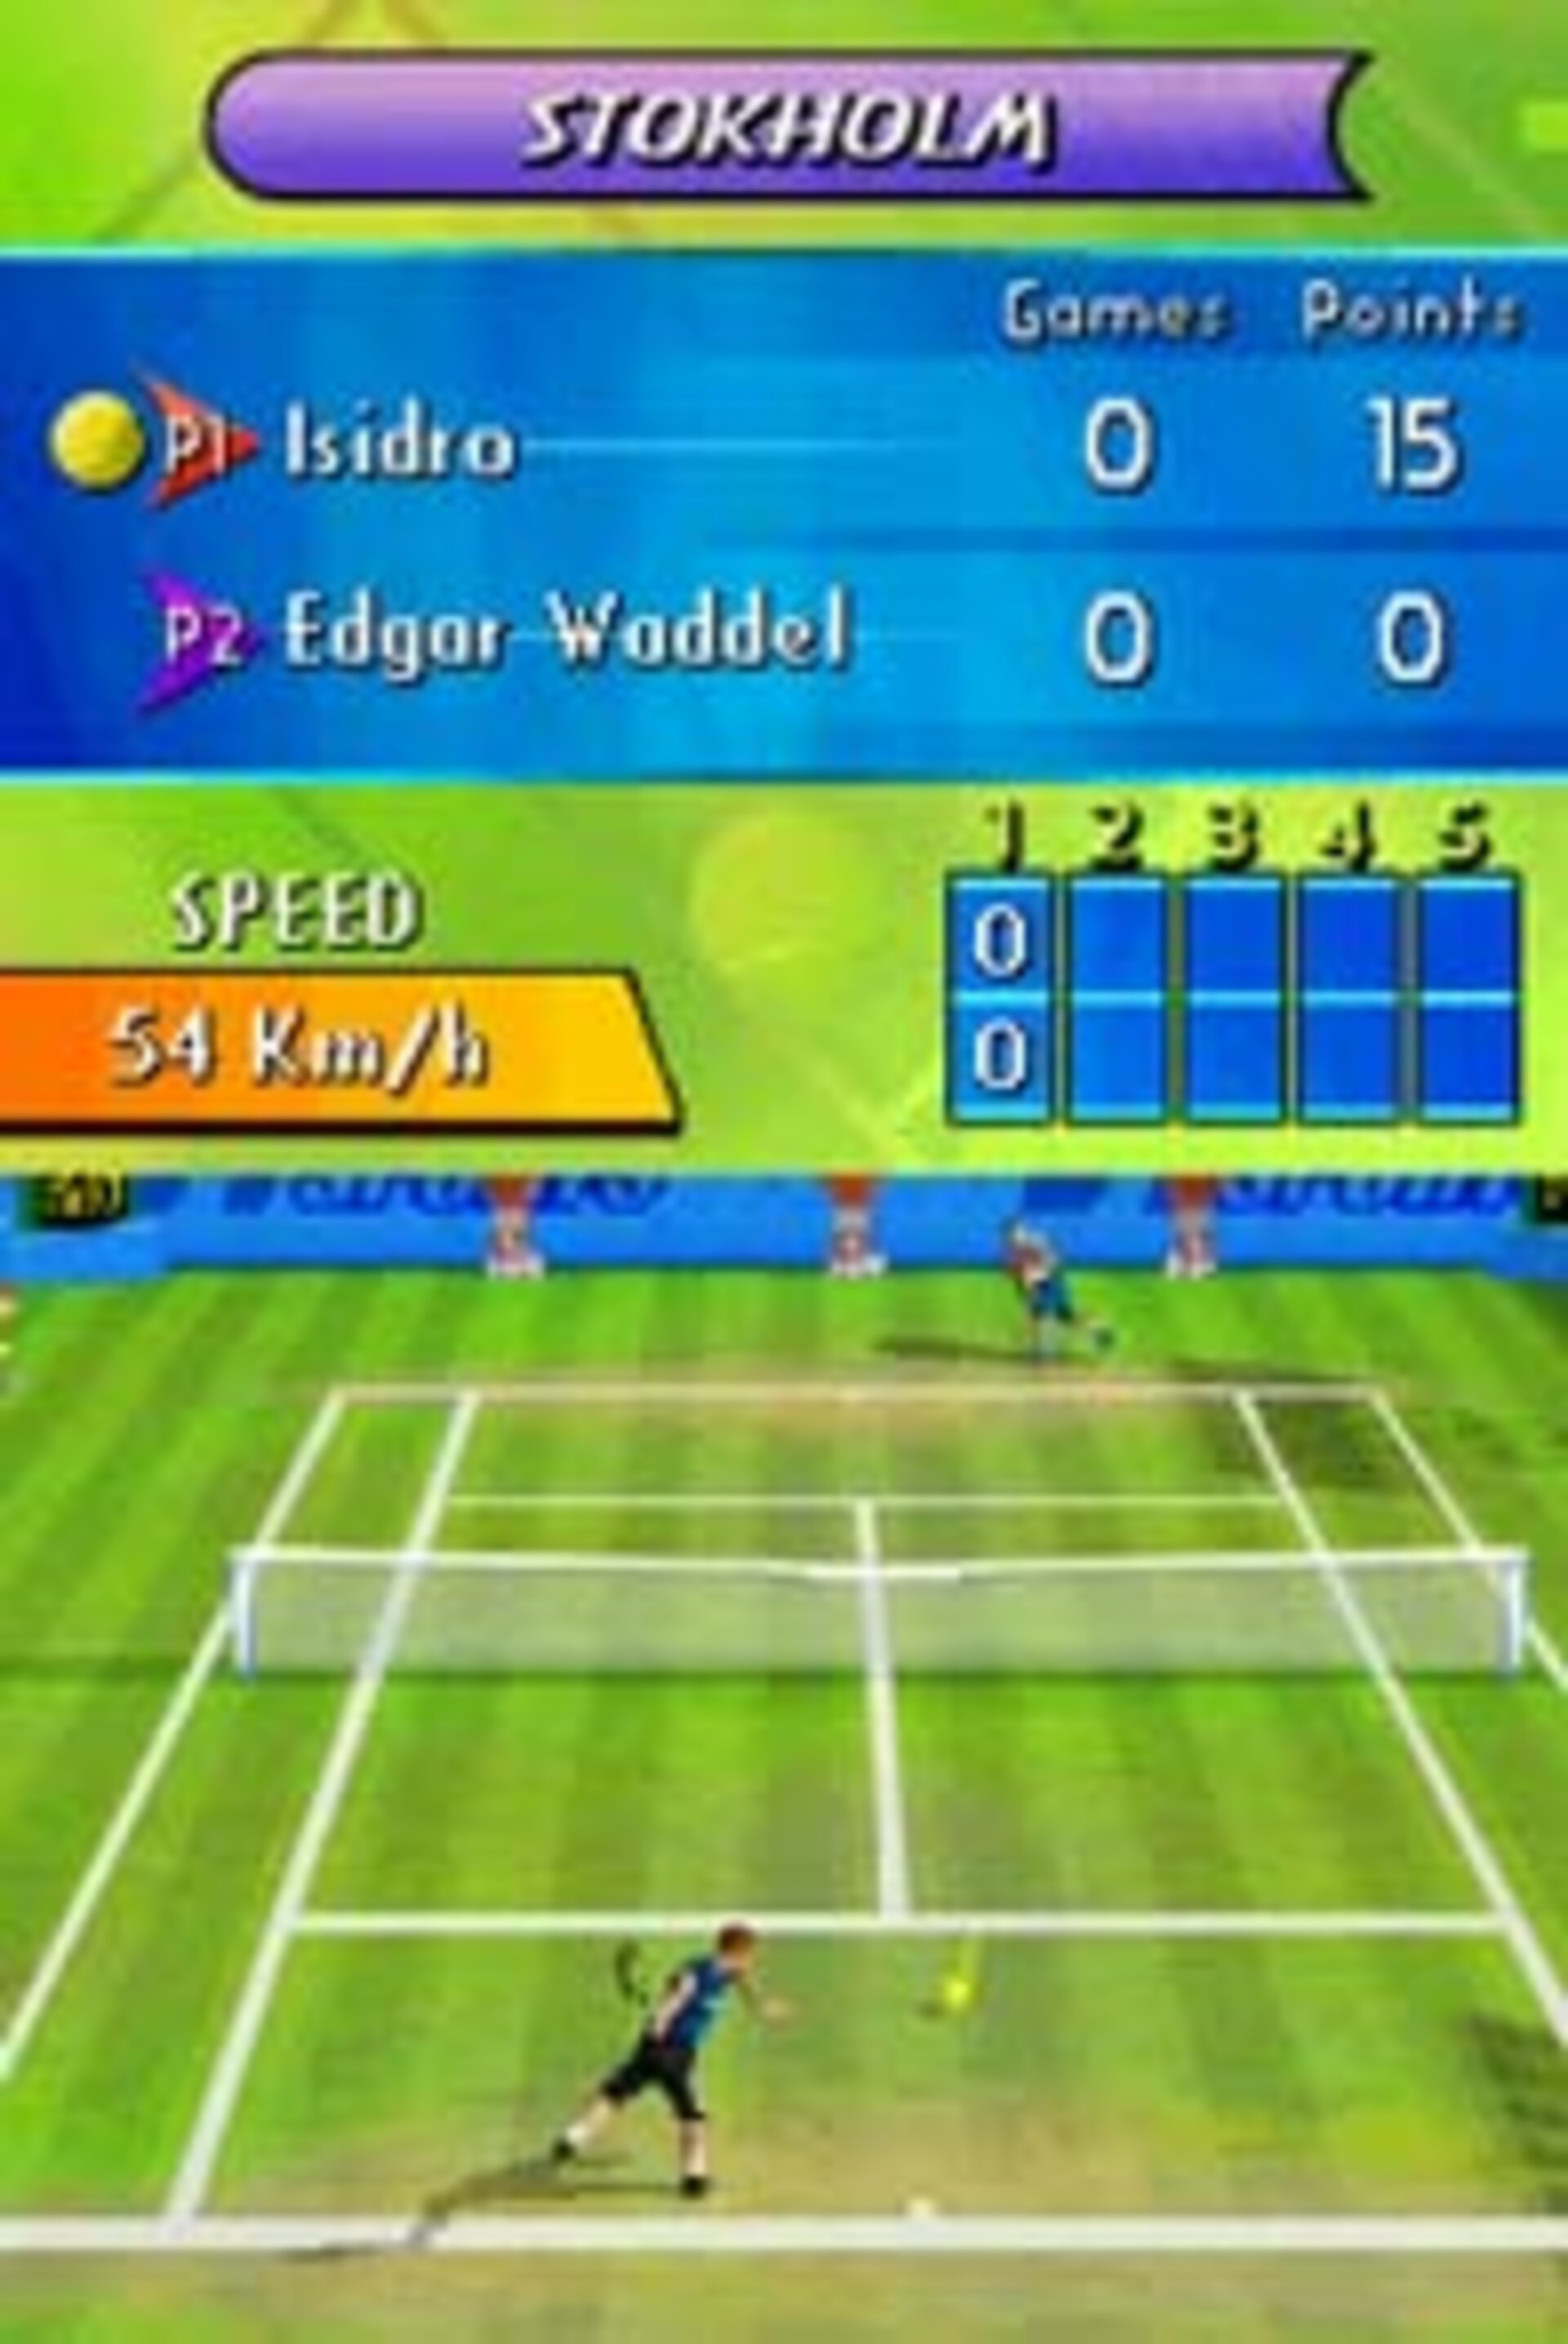 V t игра. VT из игры. VT Tennis. Ar теннис игра. Первая известная компьютерная игра называлась "Tennis for two".